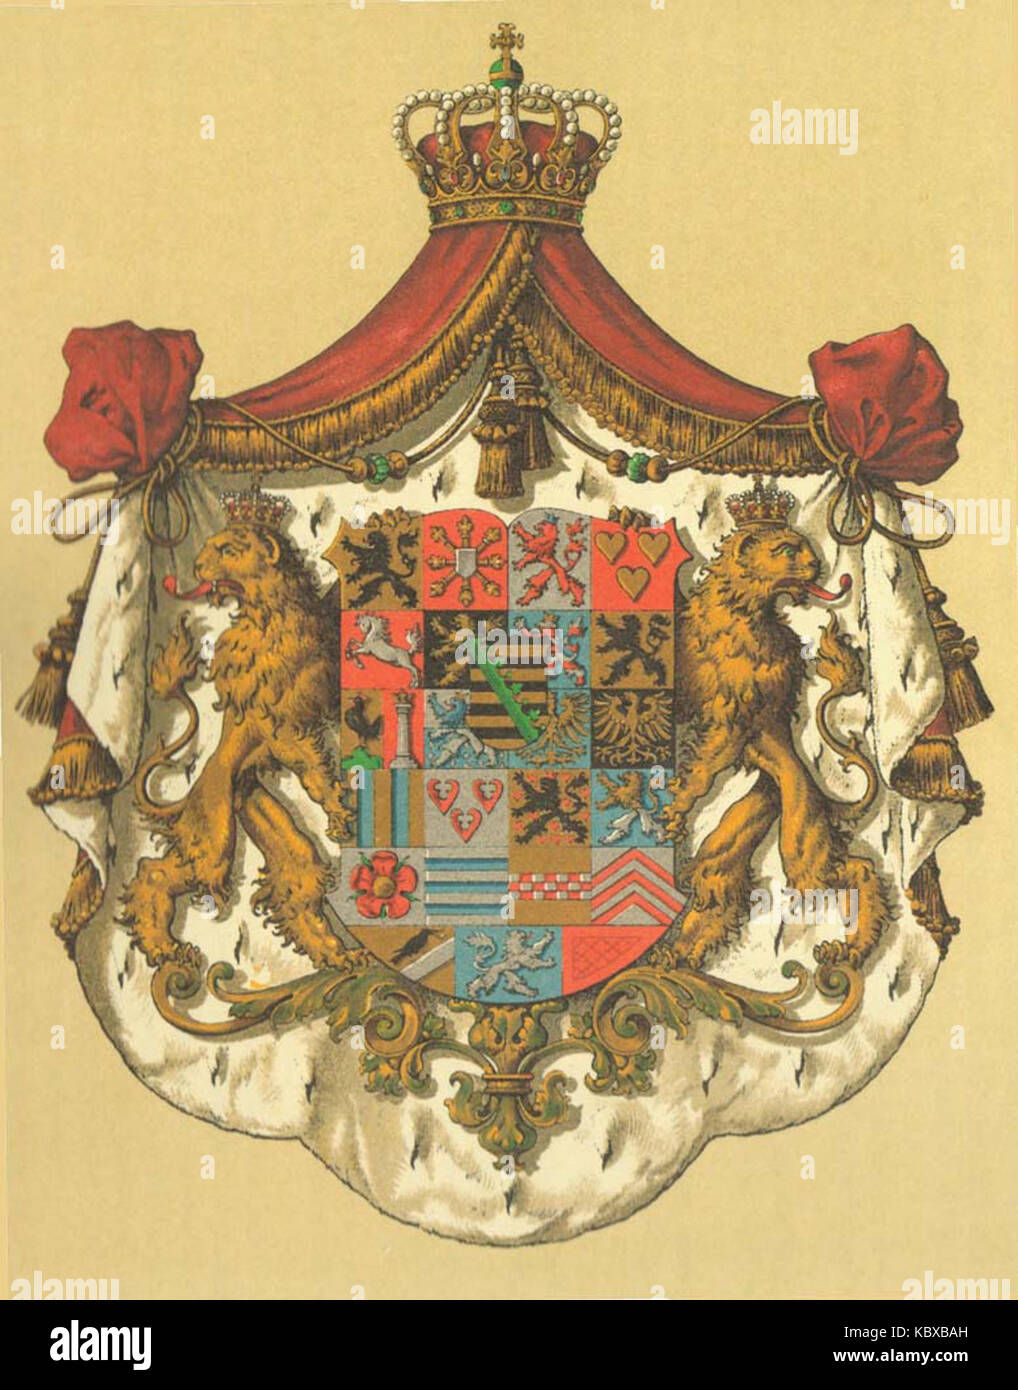 Wappen Deutsches Reich   Herzogtum Sachsen Coburg und Gotha (Grosses) Stock Photo